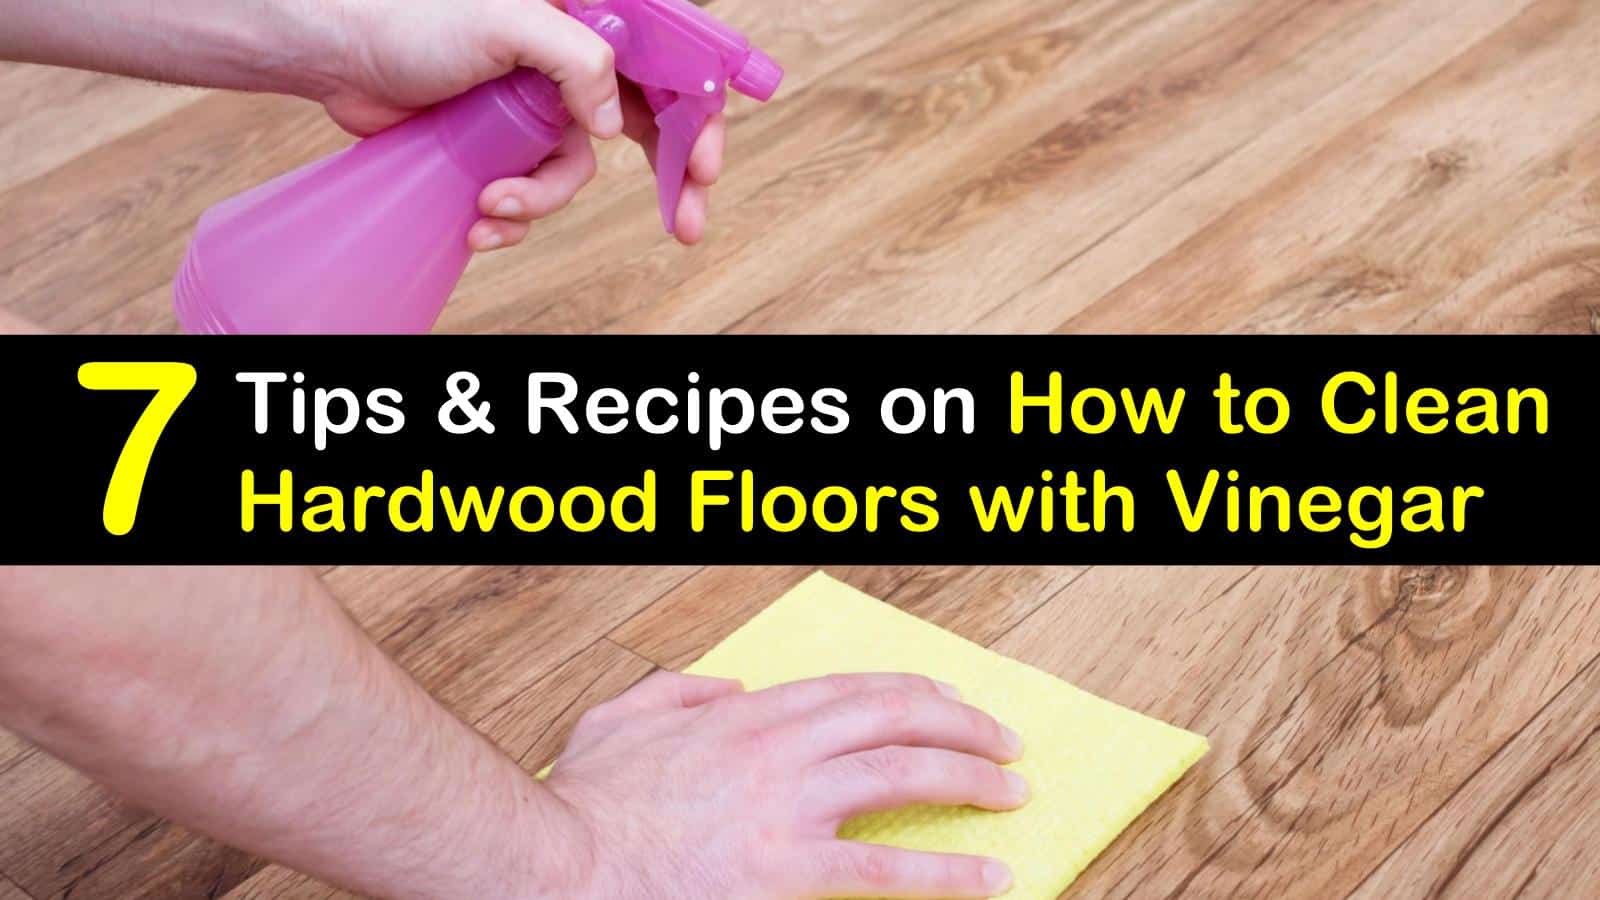 Clean Hardwood Floors With Vinegar, How To Best Clean Dirty Hardwood Floors